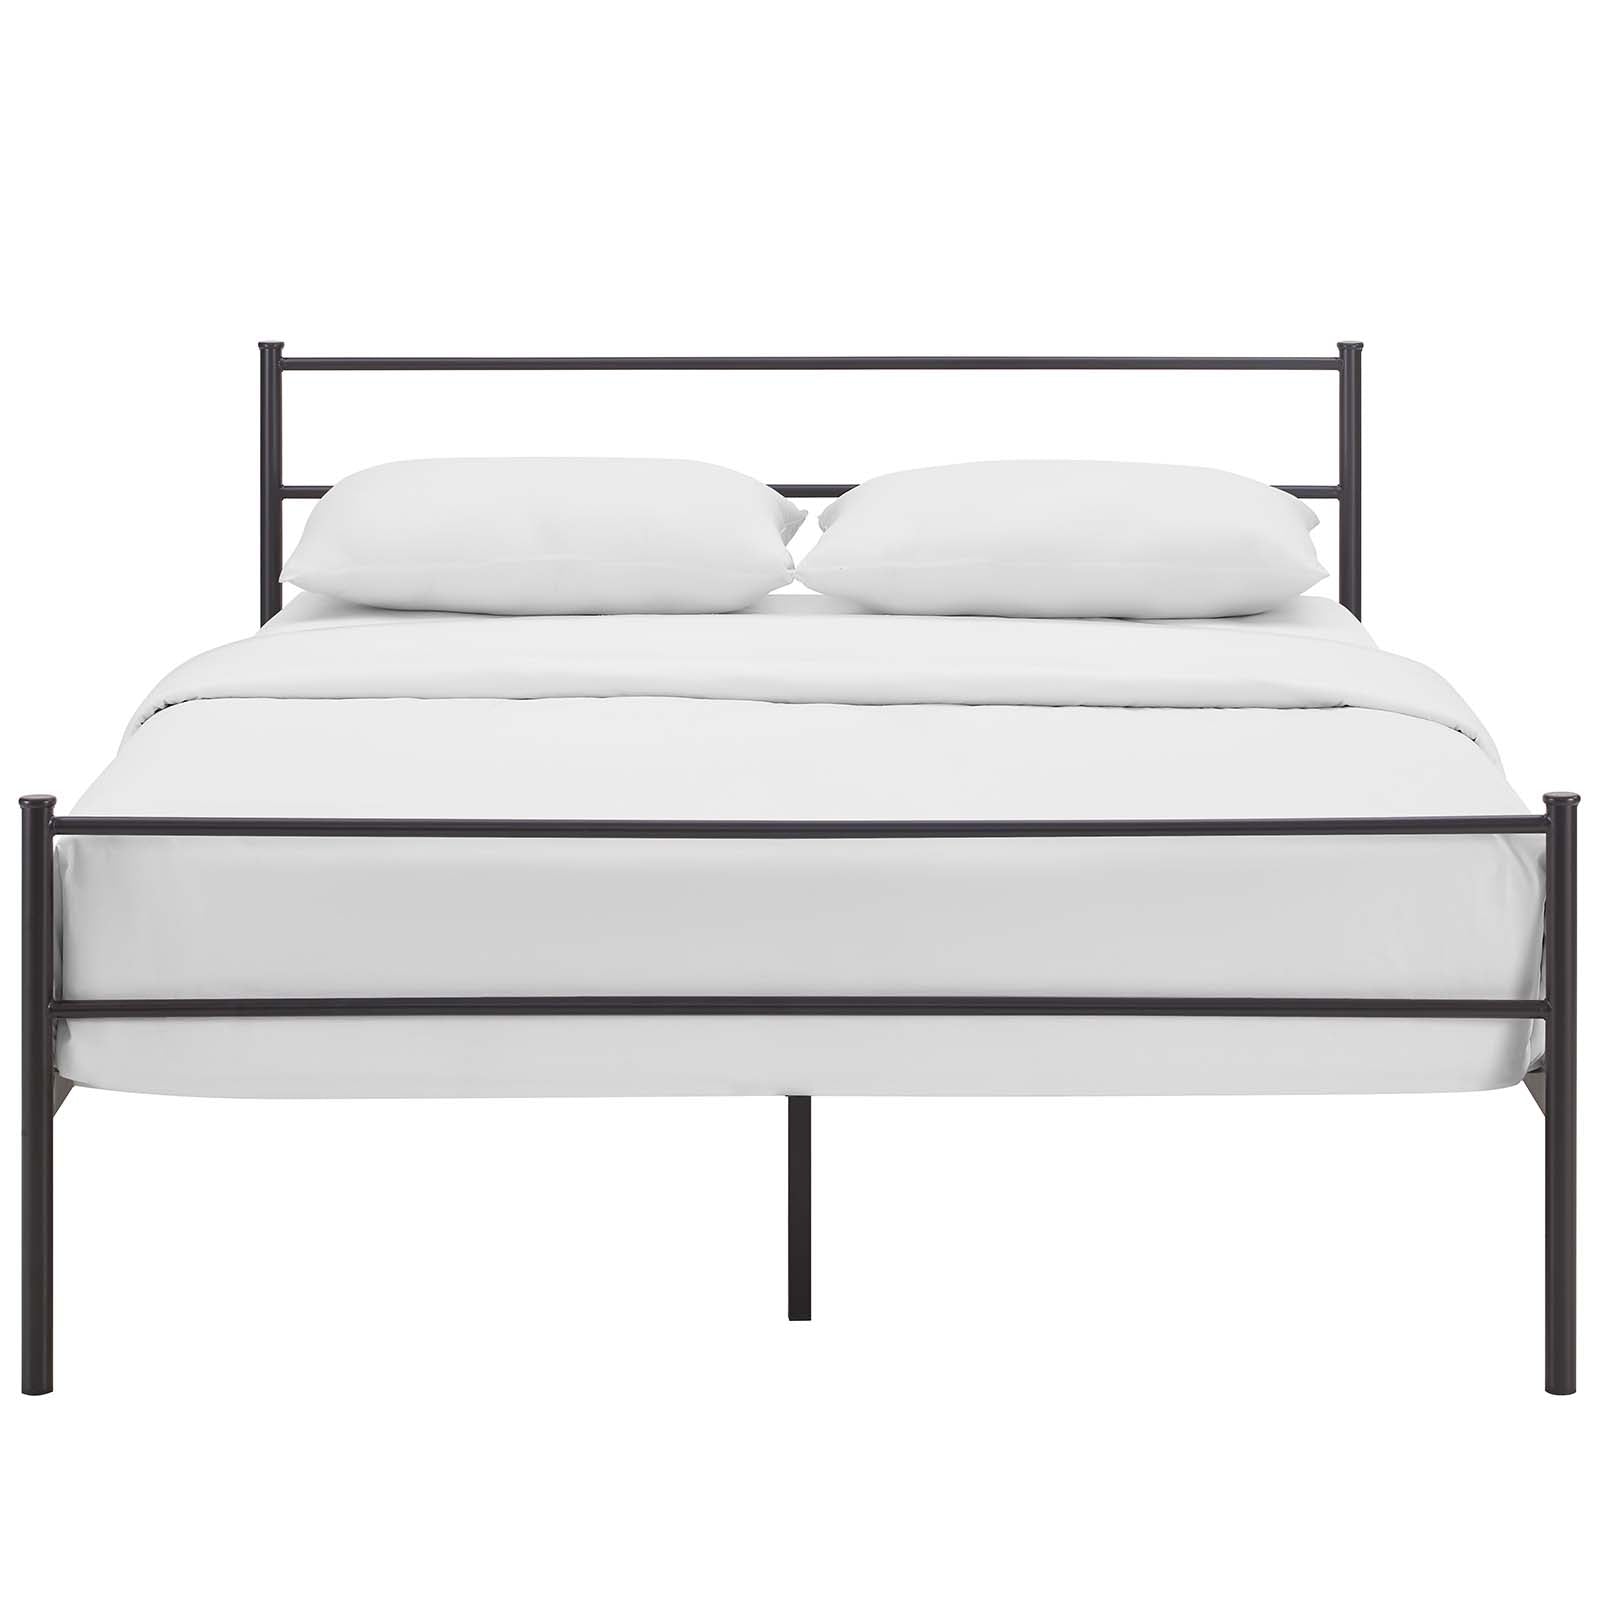 Modway Beds - Alina Full Platform Bed Frame Brown